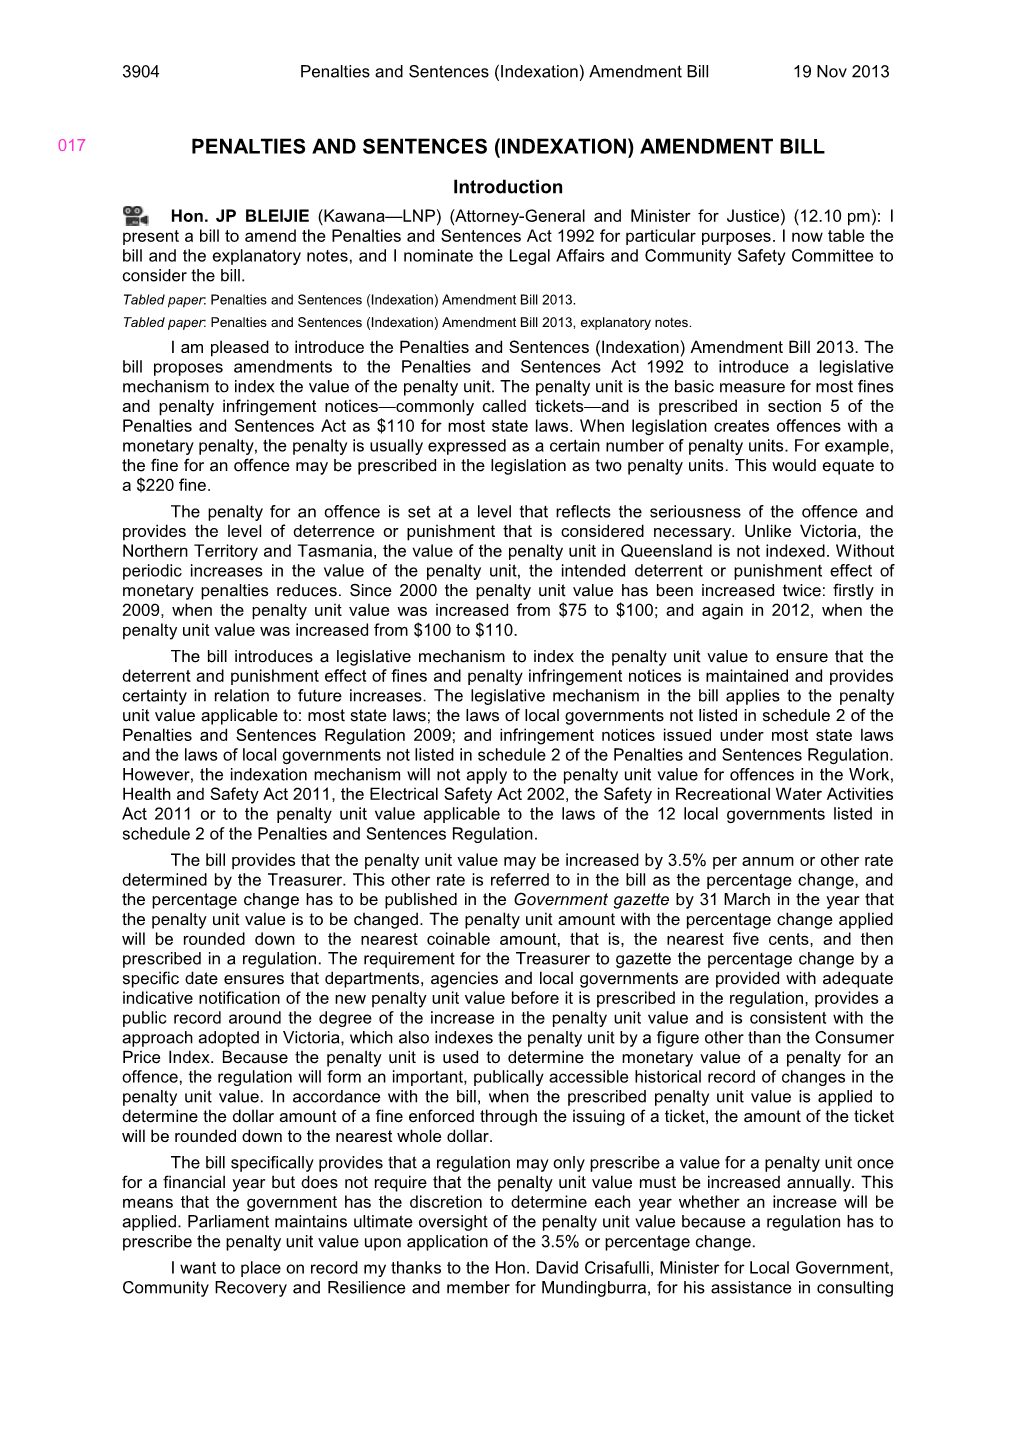 Penalties and Sentences (Indexation) Amendment Bill 19 Nov 2013